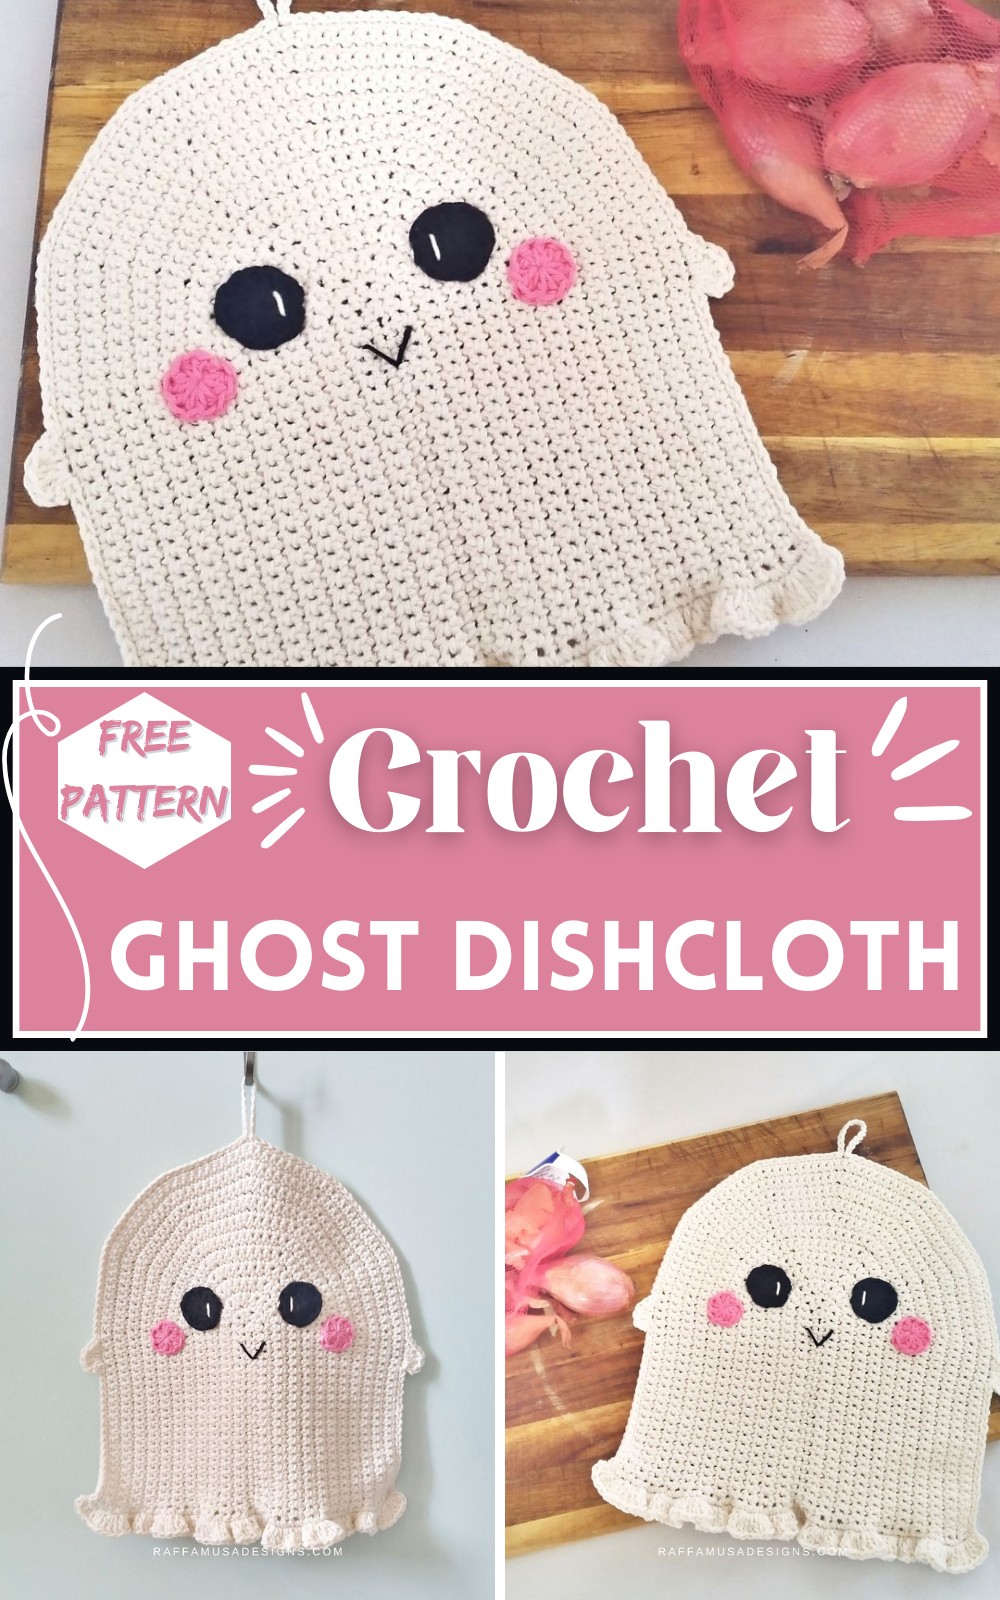 Ghost Dishcloth